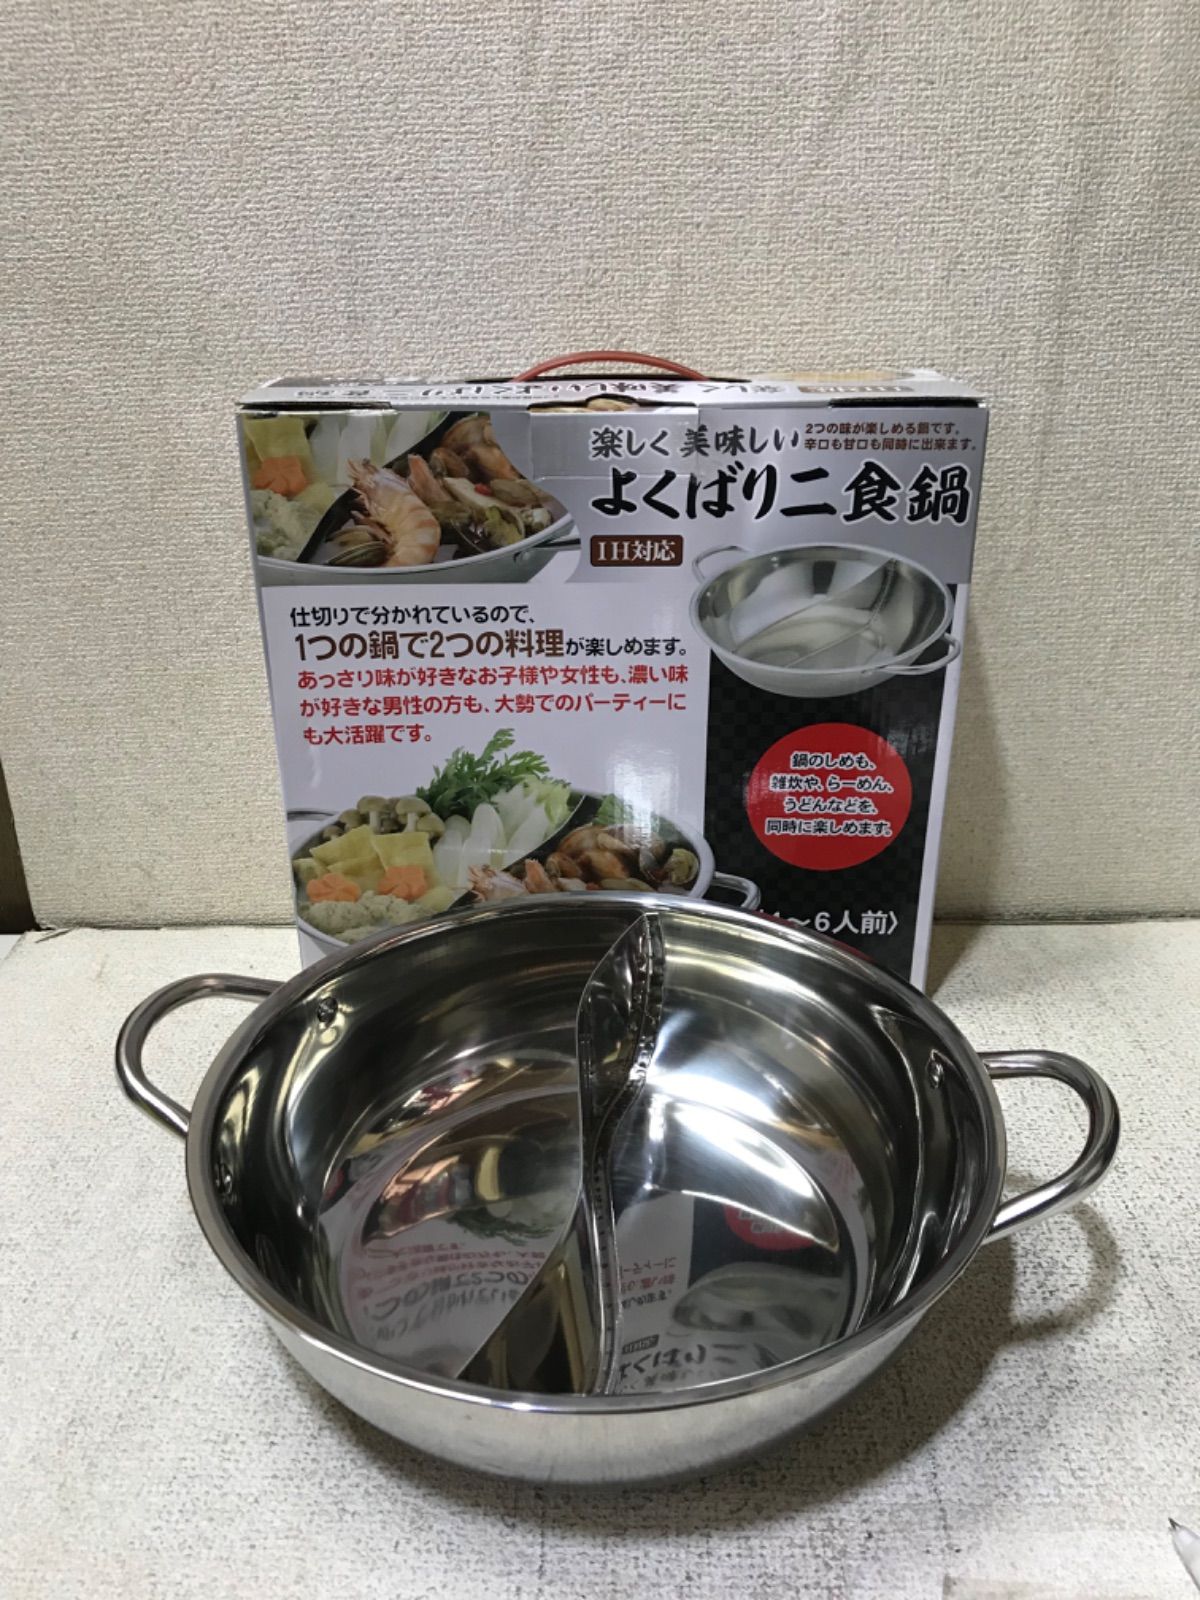 SALE／59%OFF】 よくばり2食鍋 IH対応 sushitai.com.mx